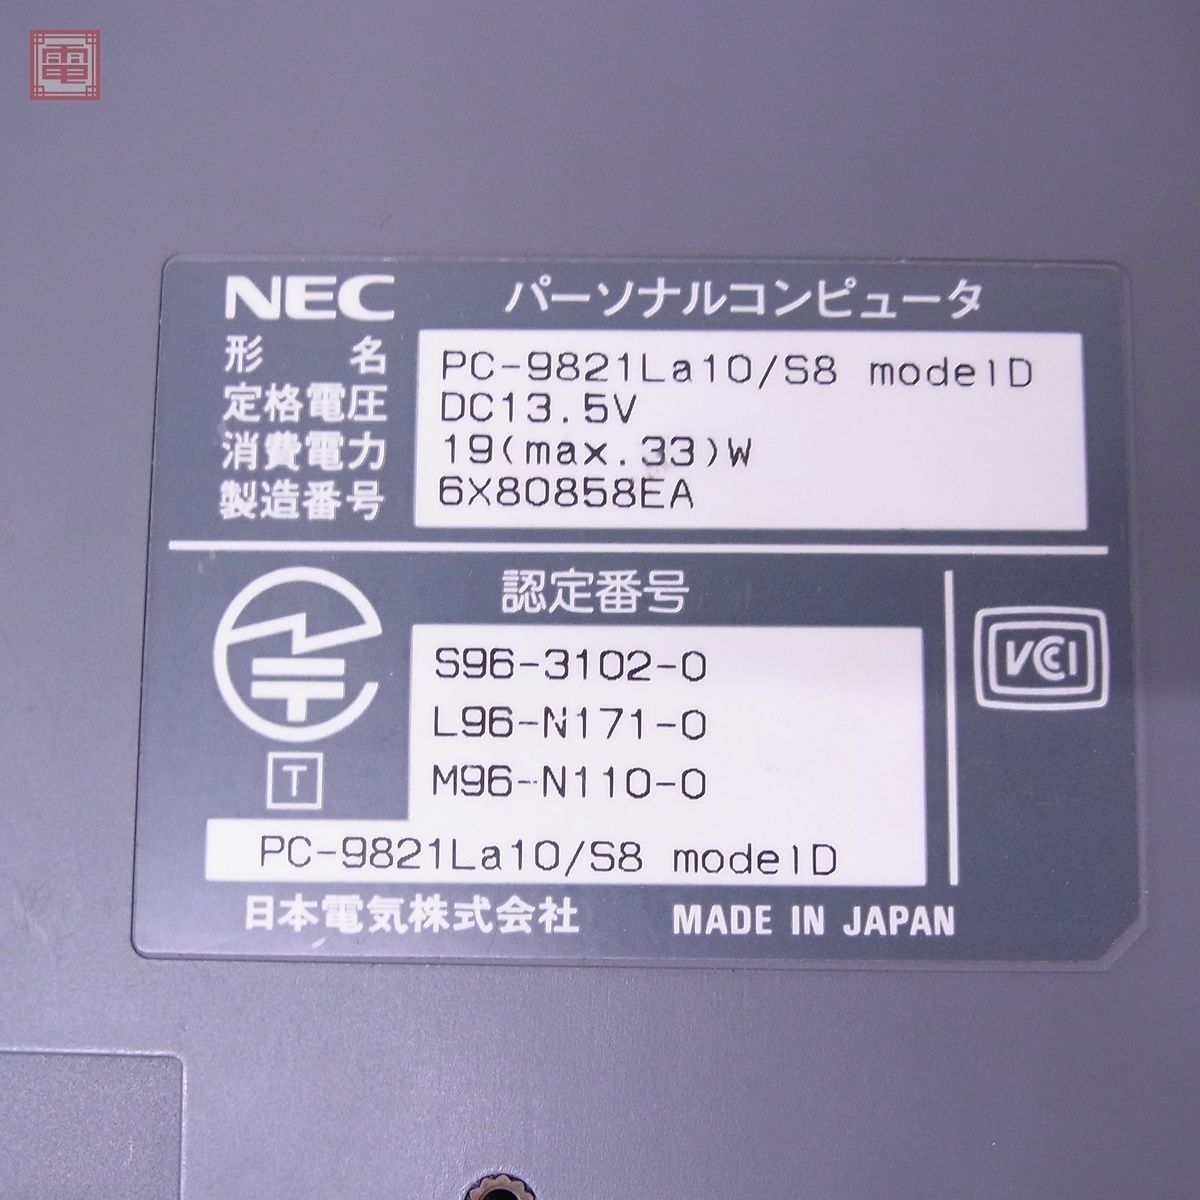 NEC PC-9821La10/8 /S8 model A/B/C/D 98NOTE Aile まとめて4台セット HDDなし 日本電気 ジャンク パーツ取りにどうぞ【20_画像7